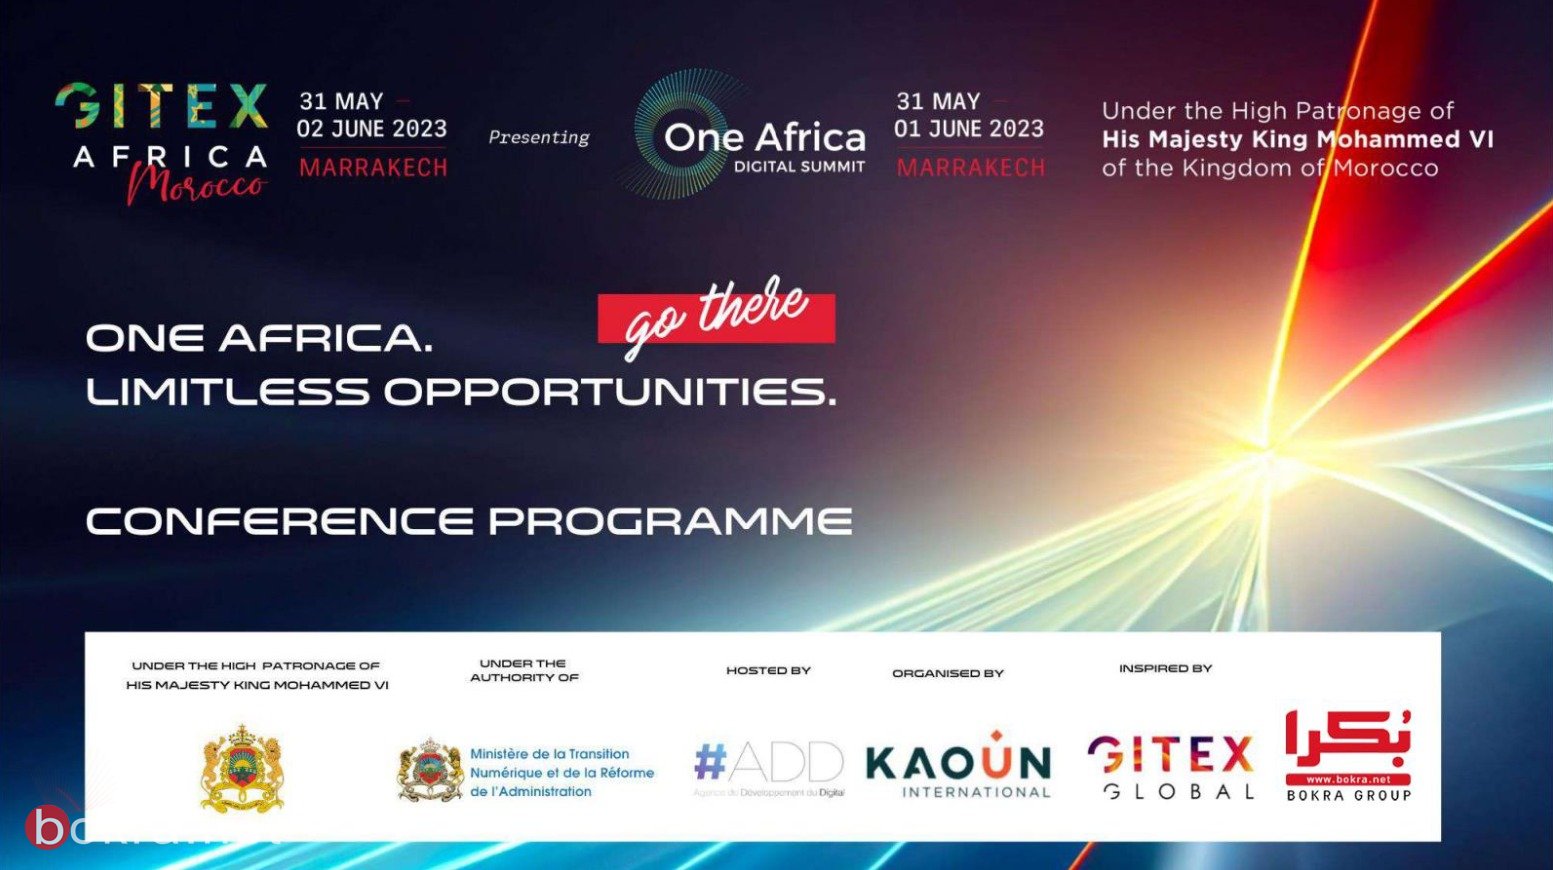 اليوم: مؤتمر GITEX Africa في مراكش المغربية بالتعاون مع "بكرا"-2